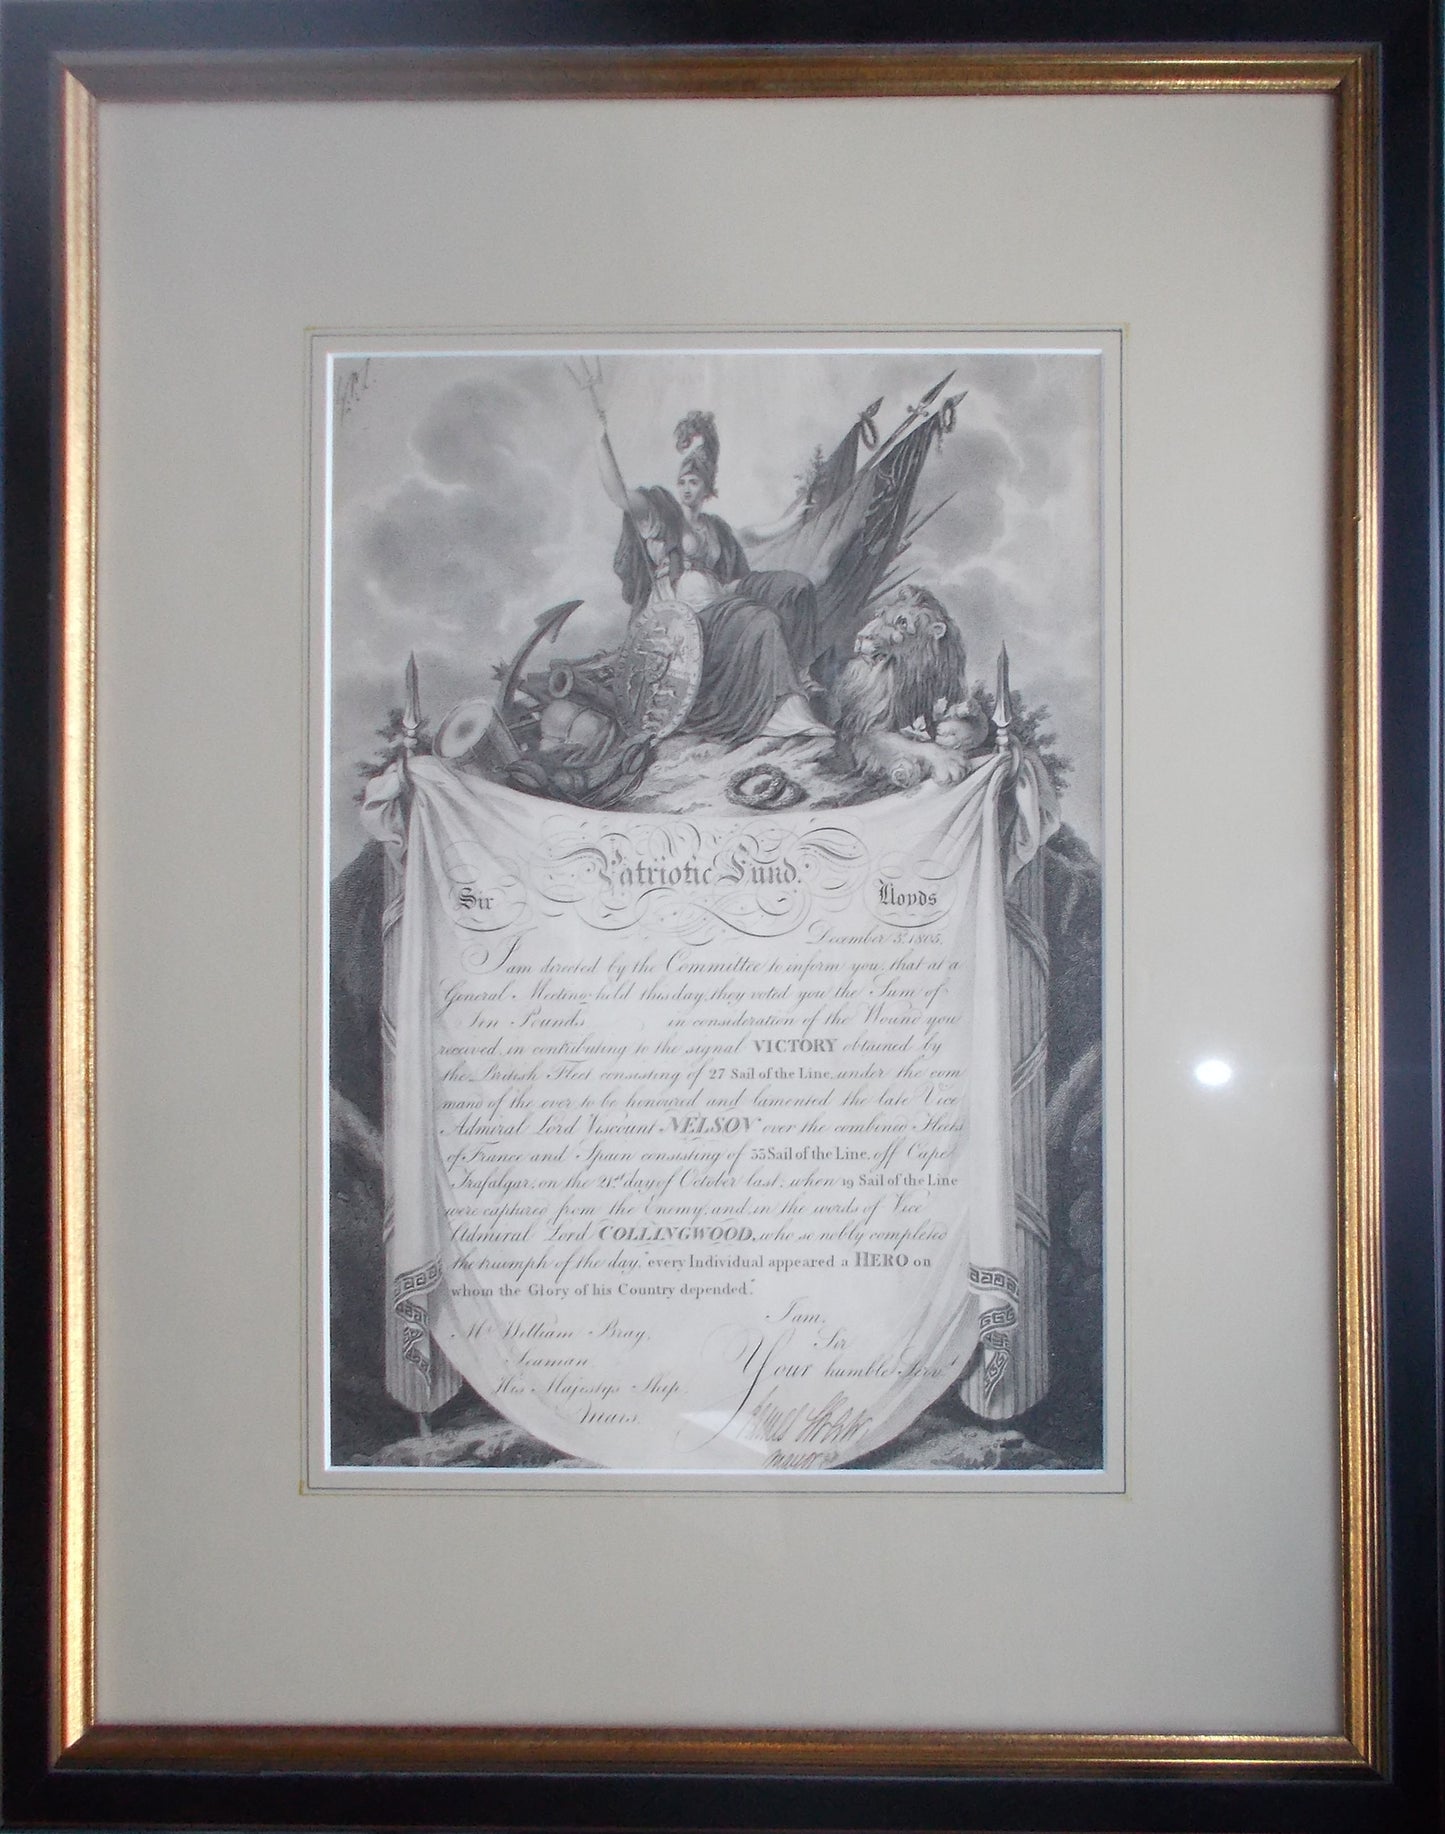 Original Patriotic Fund Certificate - Lloyds